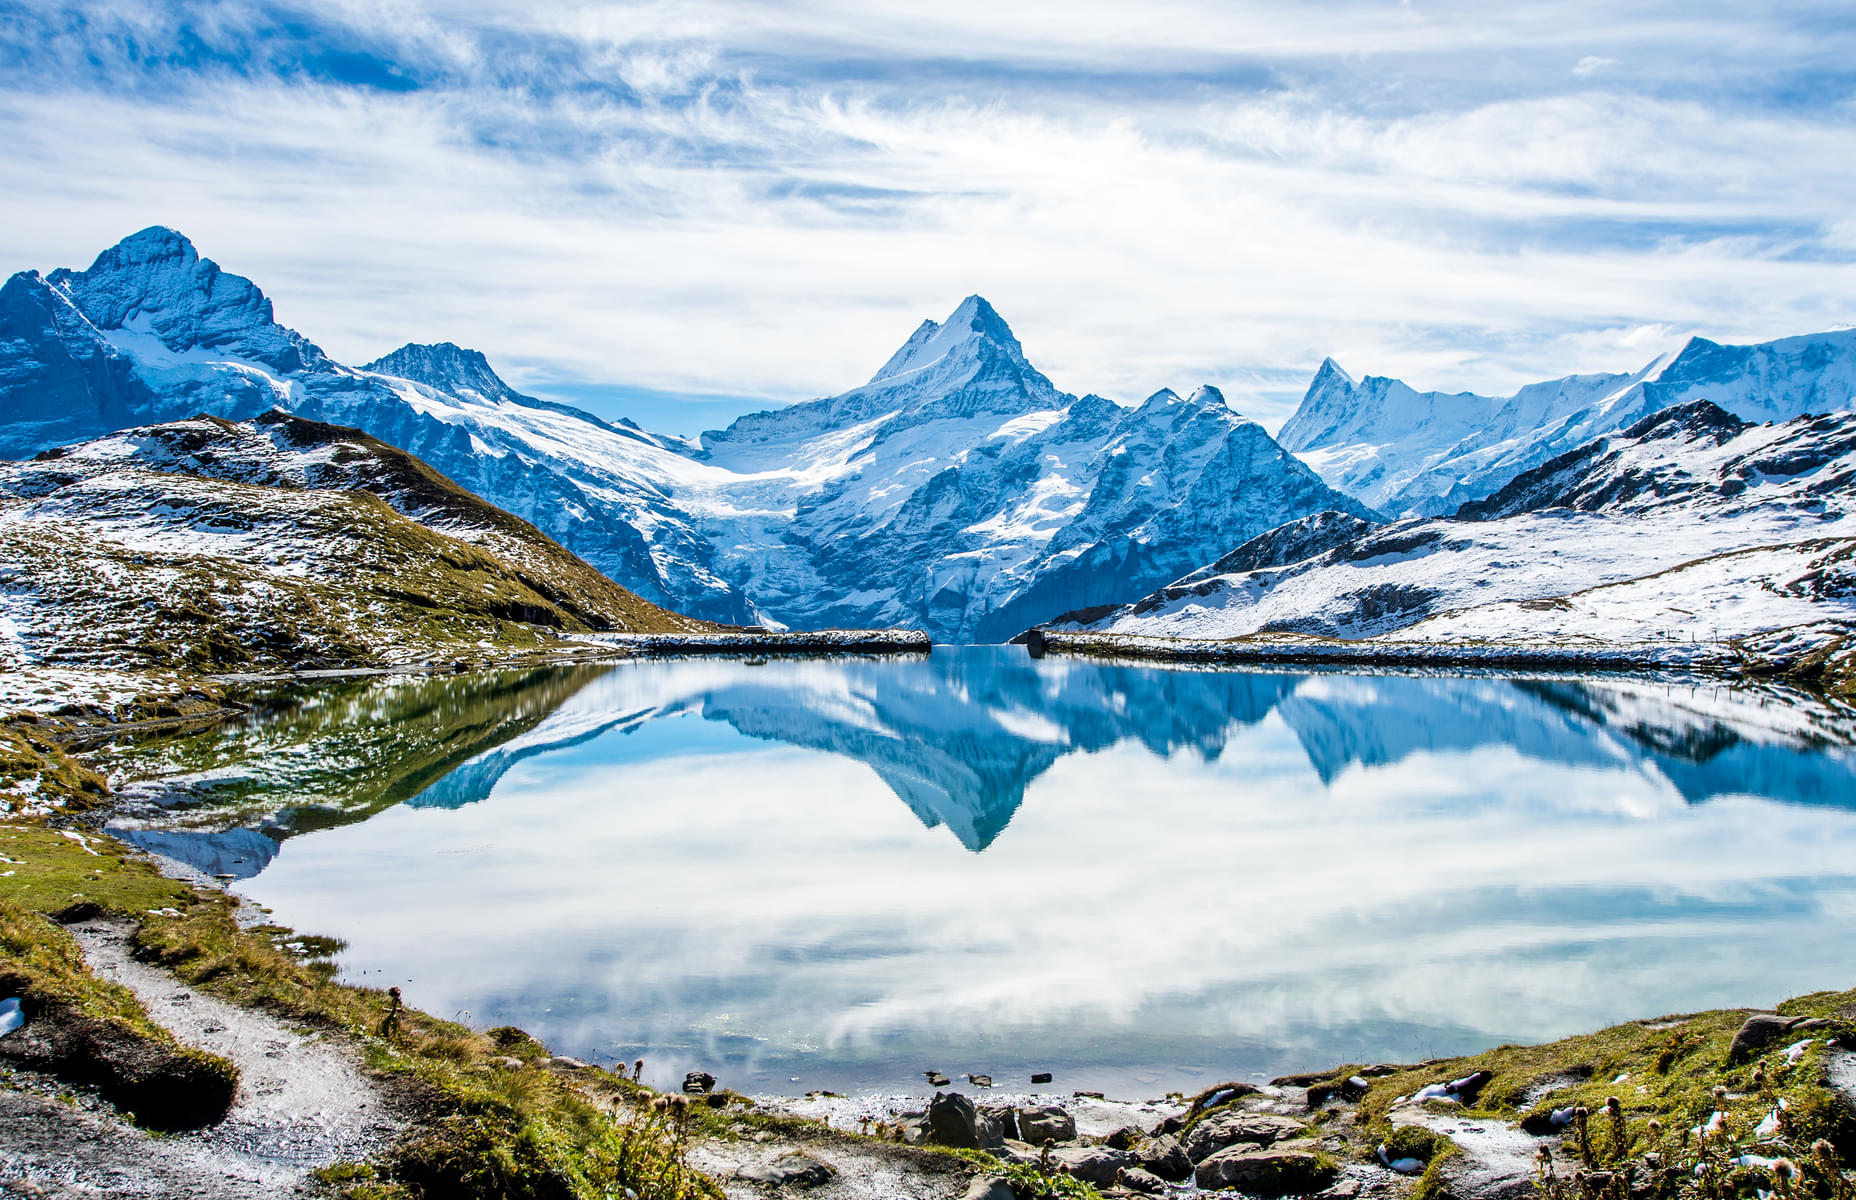 Tips to Visit Jungfraujoch